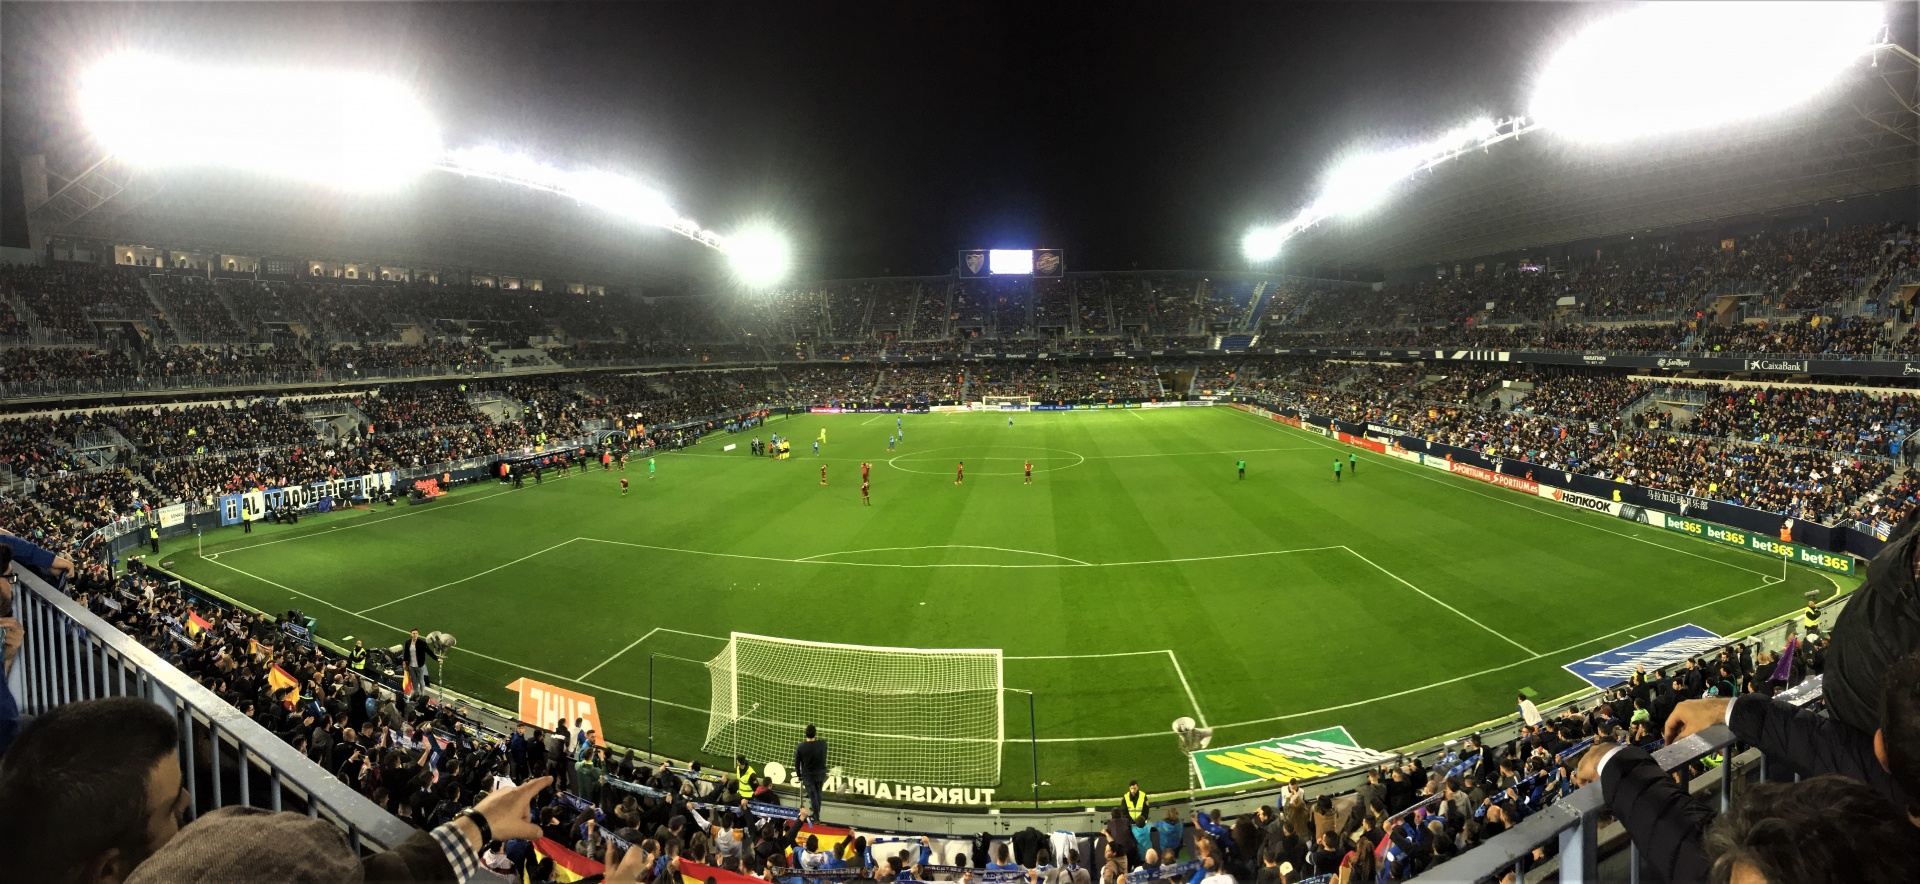 malaga football barcelona free photo